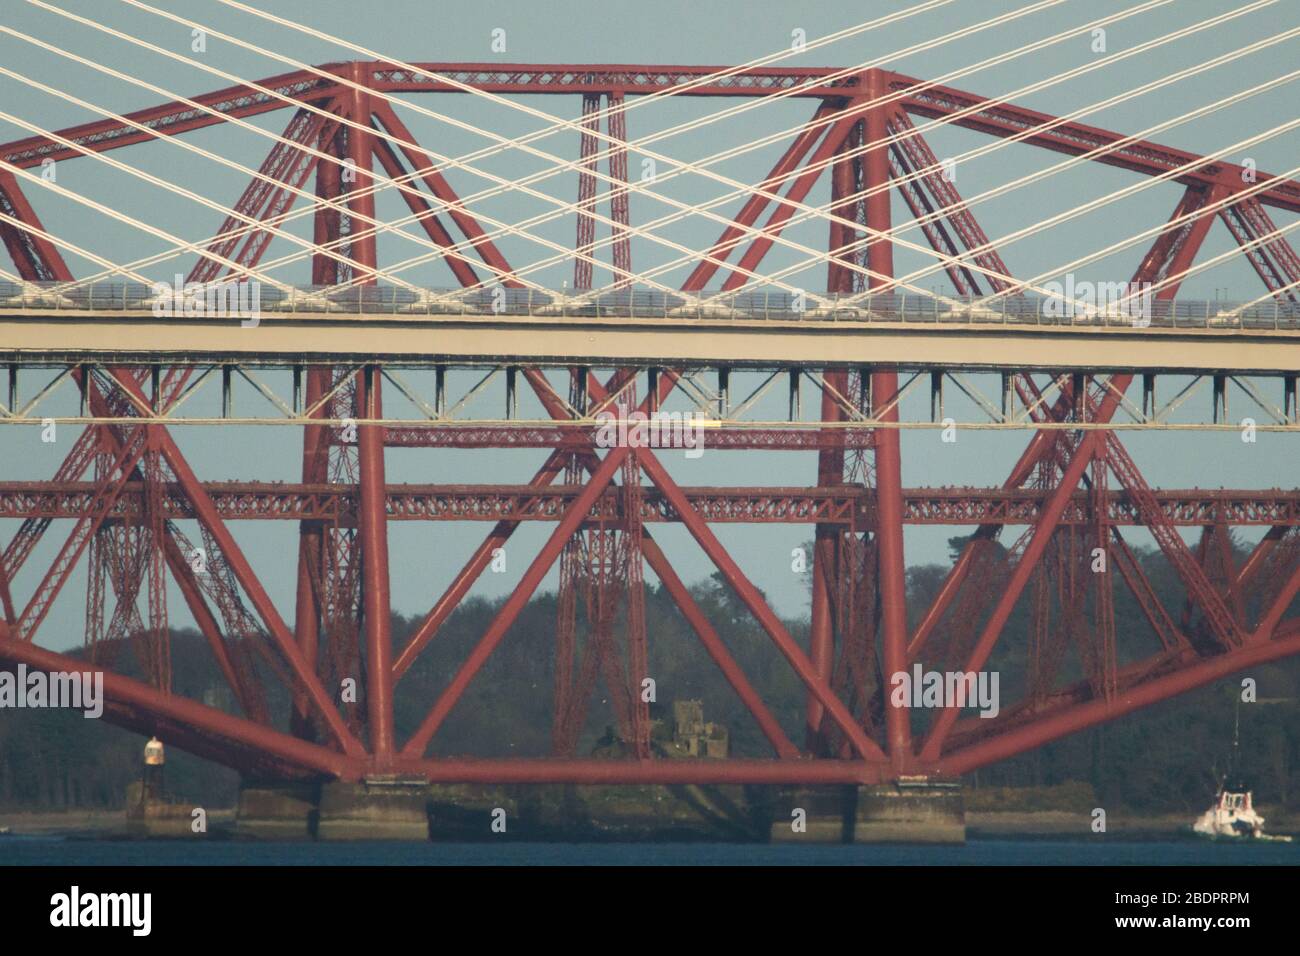 Grangemouth, Reino Unido. 8 de abril de 2020. En la foto: El Queensferry Crossing - el puente más nuevo de Escocia y el tercer cruce de la Firth of Forth que conecta Fife y Lothian, que lleva la autopista M90, que abarca 2,7 km (1.7 millas), es el puente de tres torres más largo del mundo y con cables que cruzan a mitad de la extensión. Este innovador diseño proporciona una resistencia y rigidez adicionales, lo que permite que las torres y la cubierta sean más delgadas y elegantes. Crédito: Colin Fisher/Alamy Live News. Foto de stock